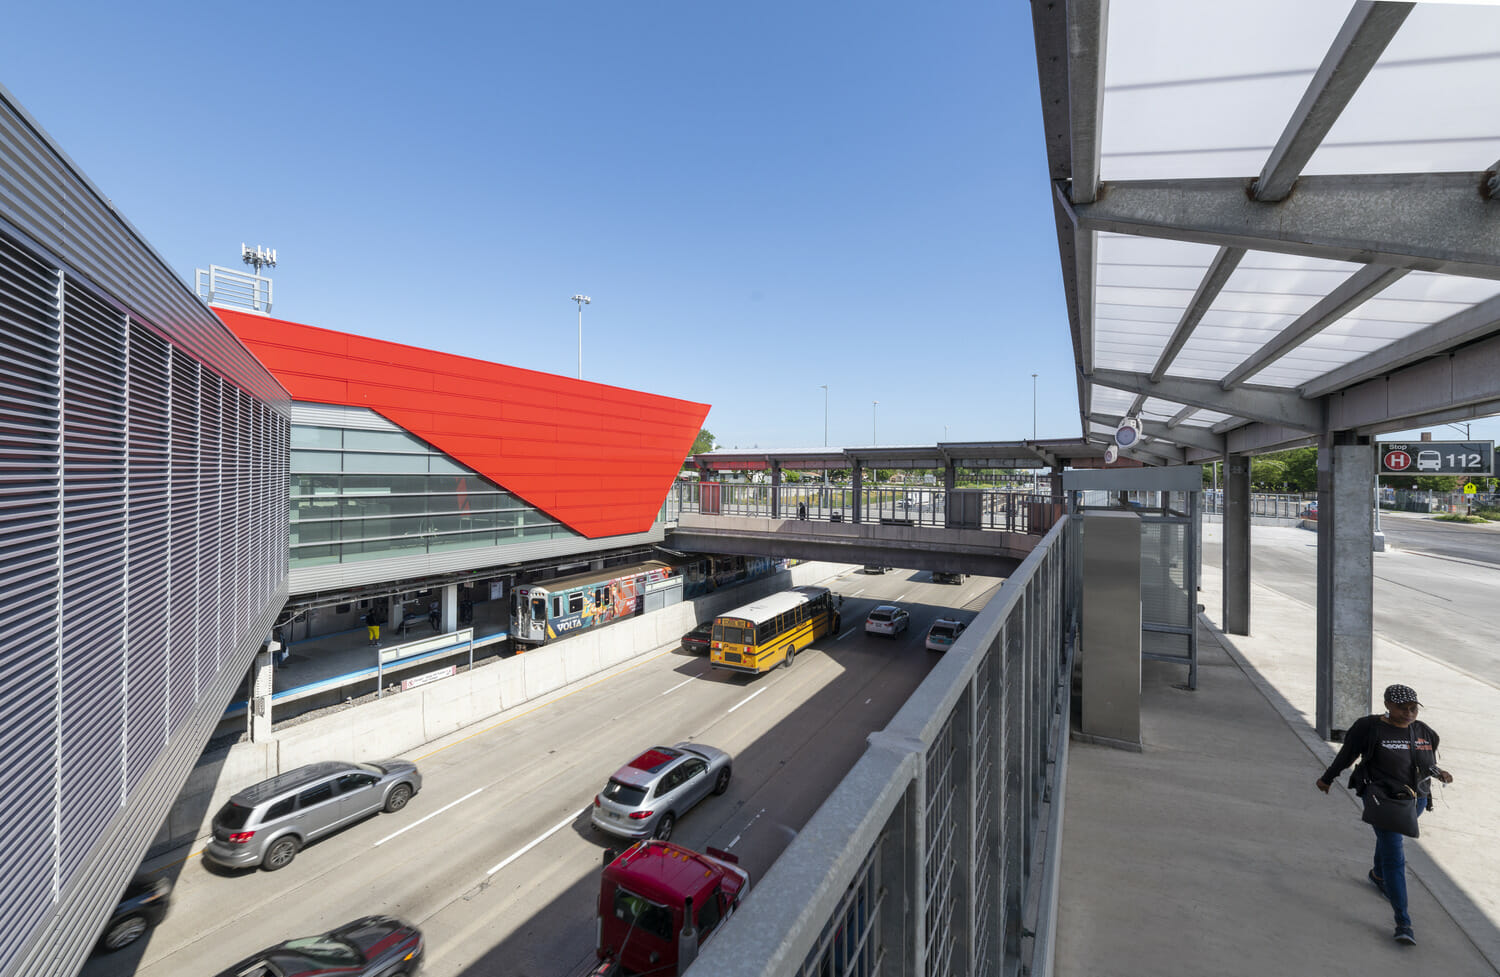 Une vue aérienne d’une gare routière au toit rouge.